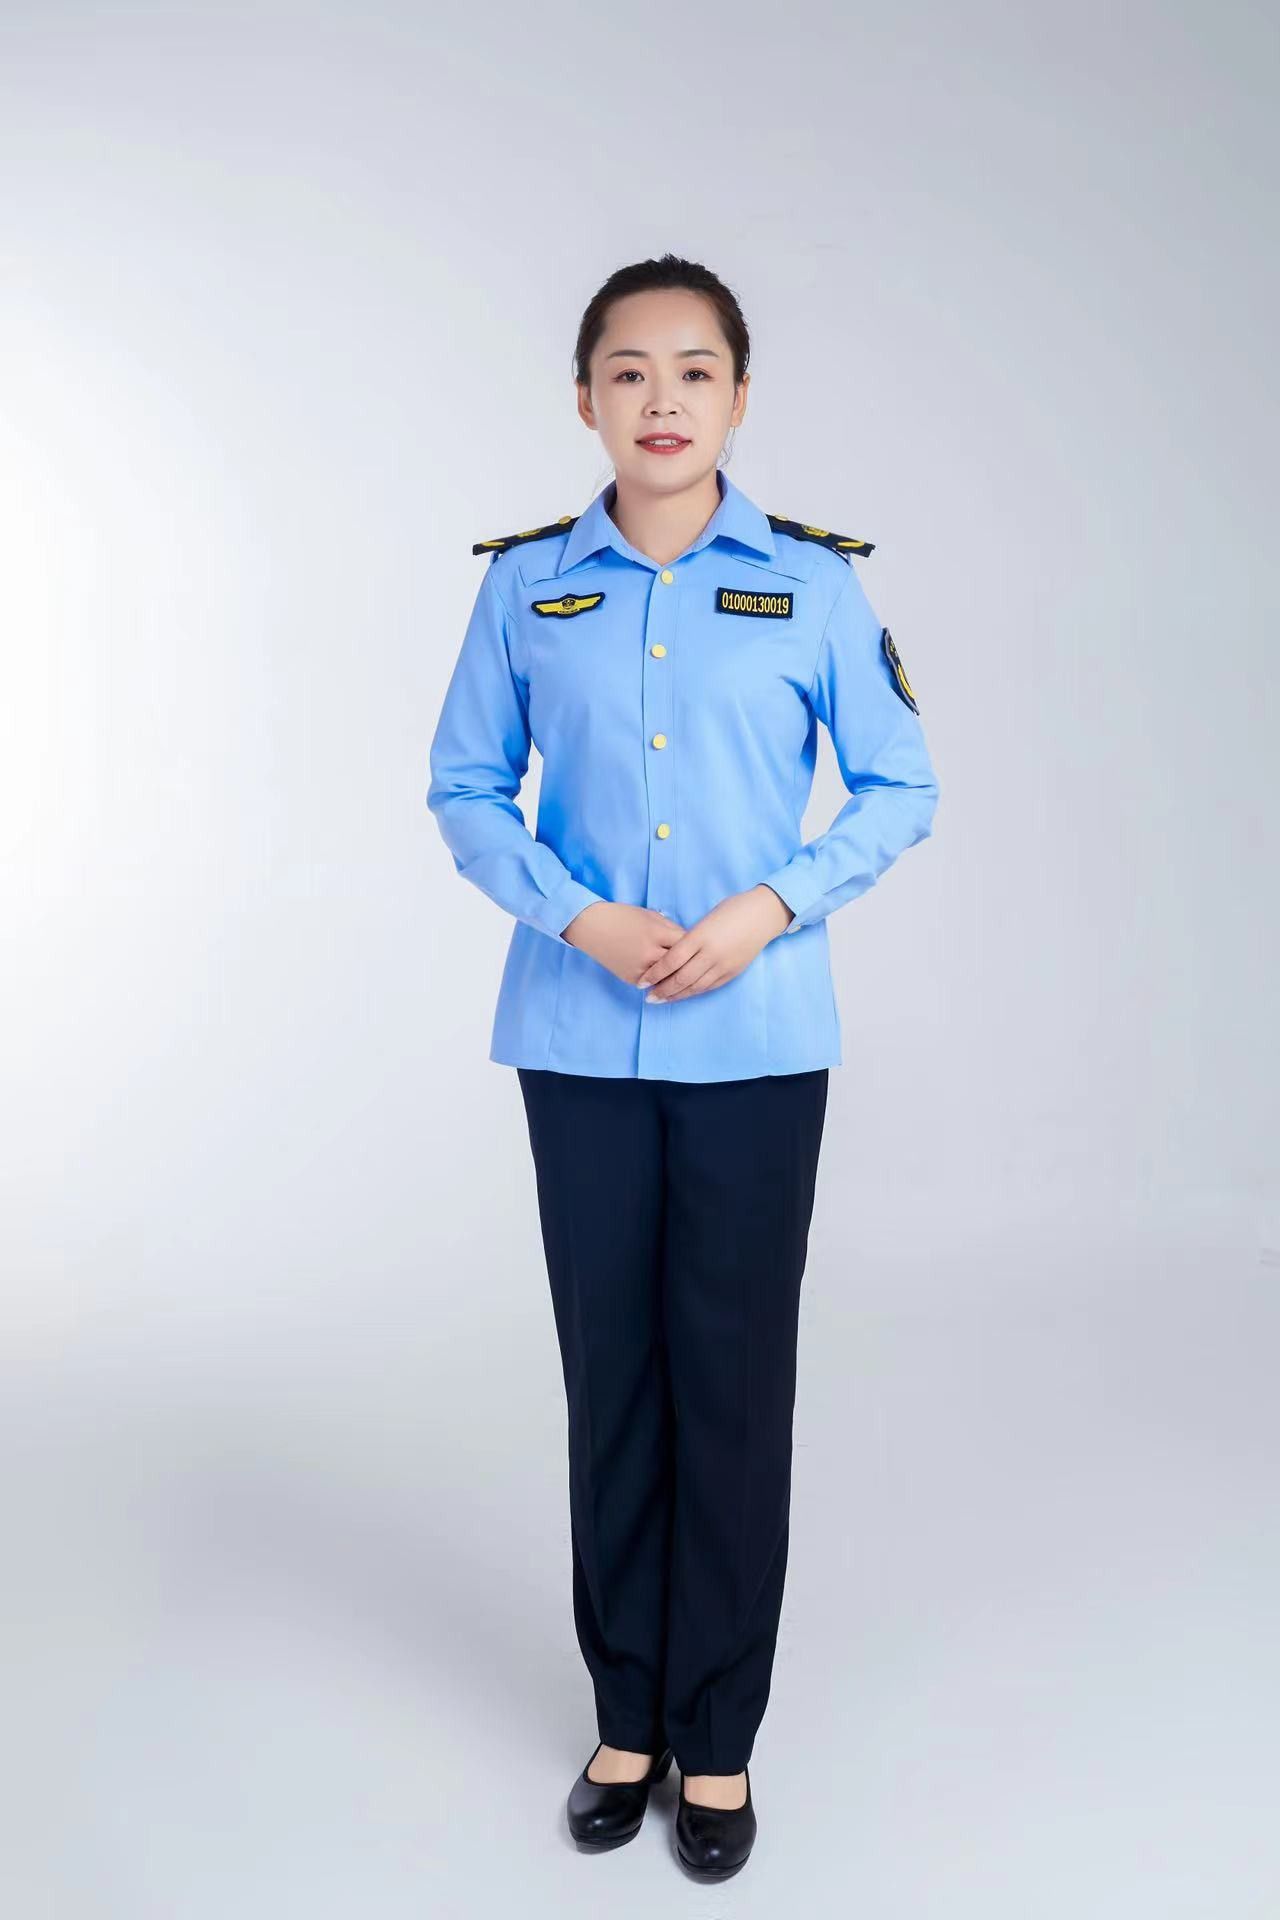 深圳执法部门制服